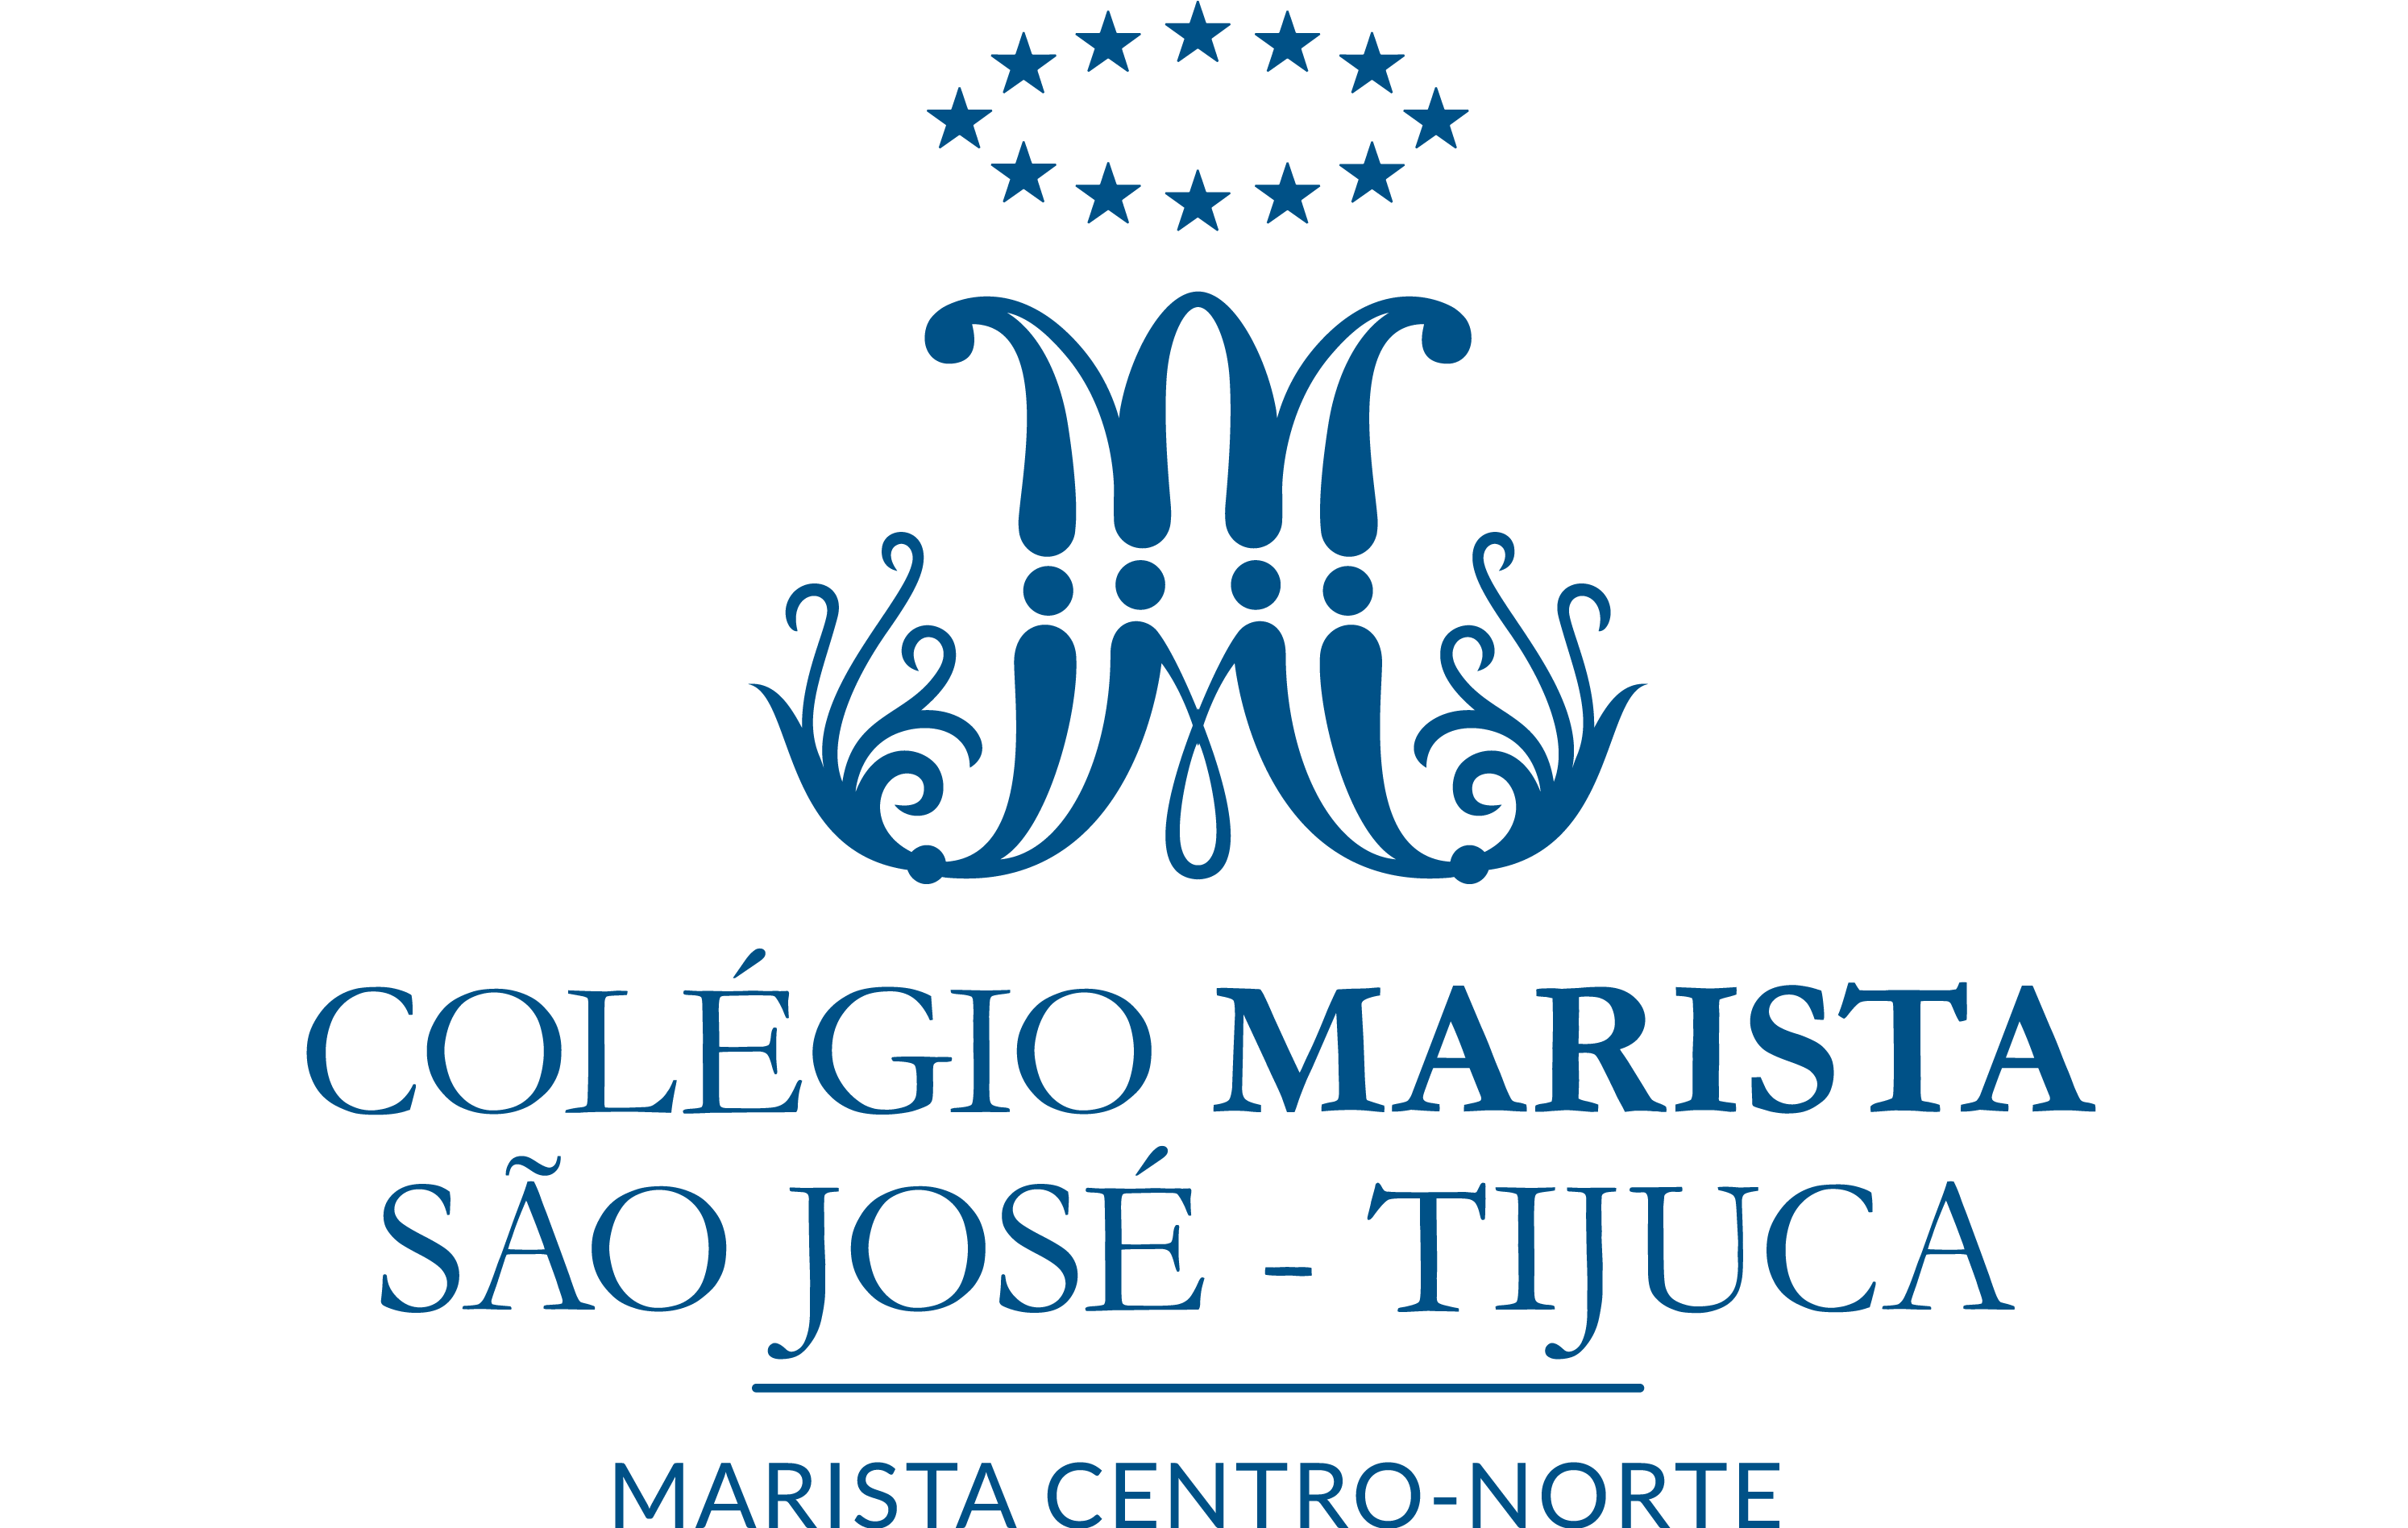  Colégio Marista São José - Tijuca